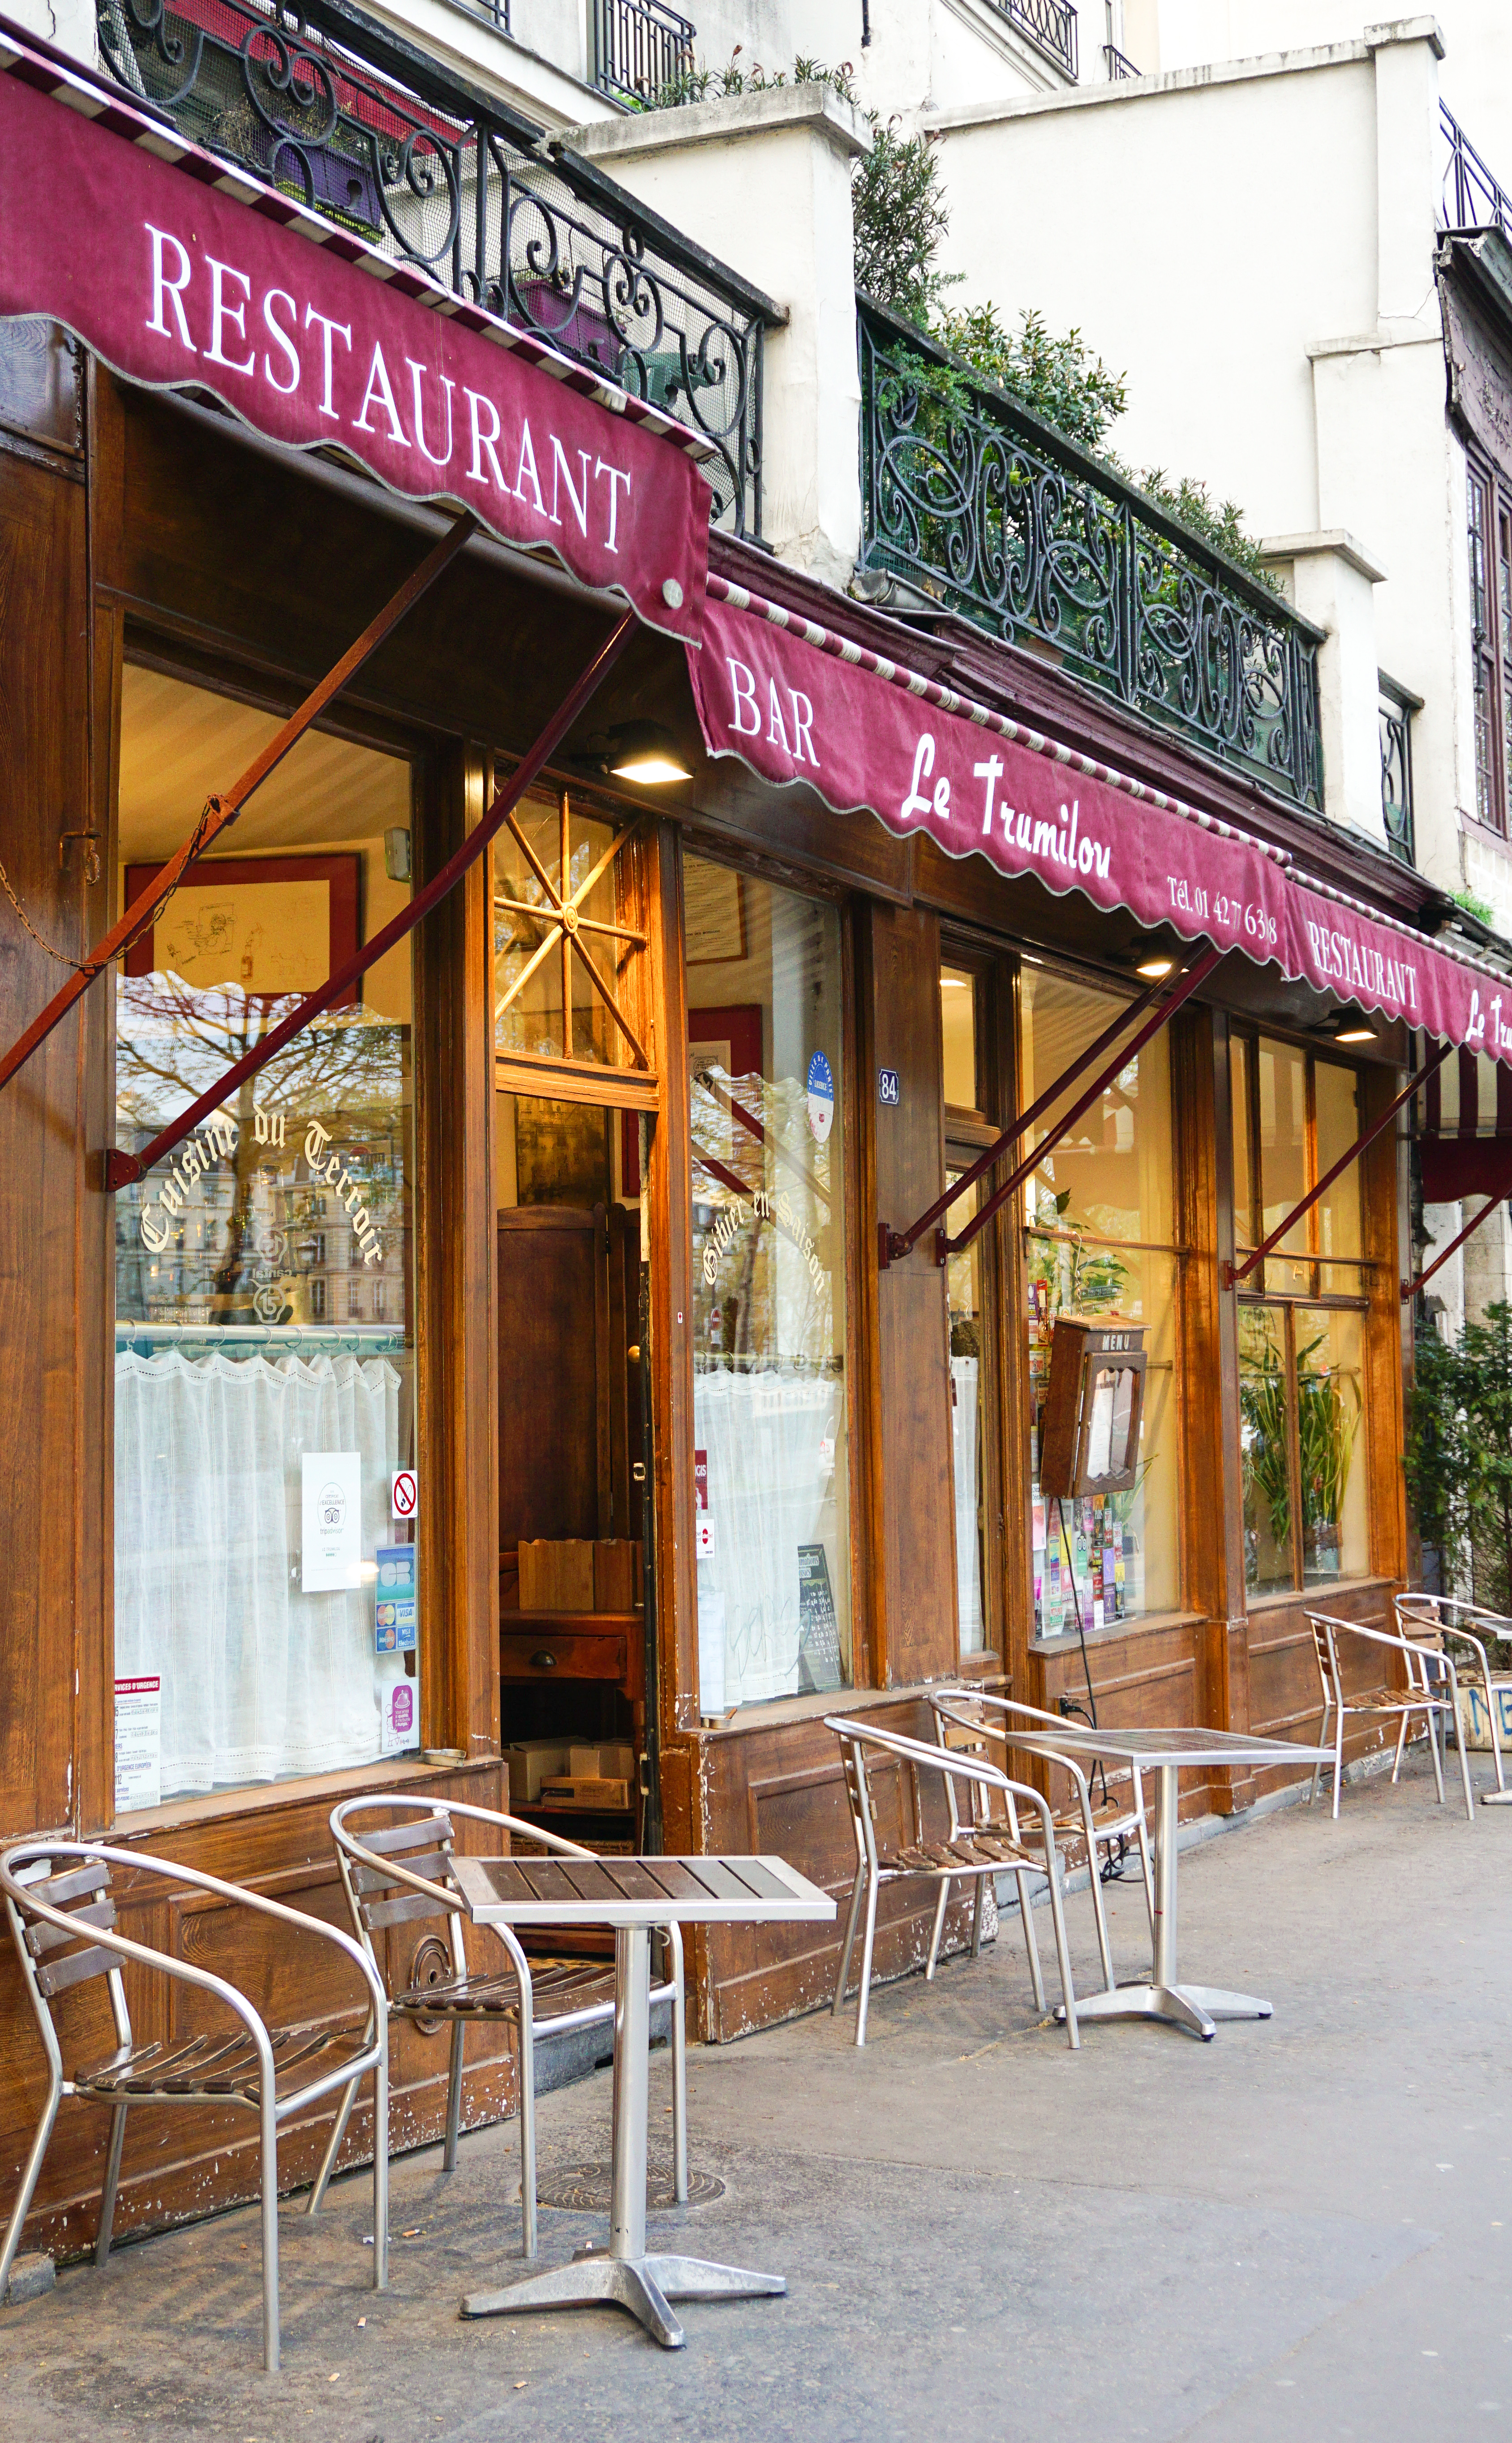 Trumilou restaurant Paris travel guide